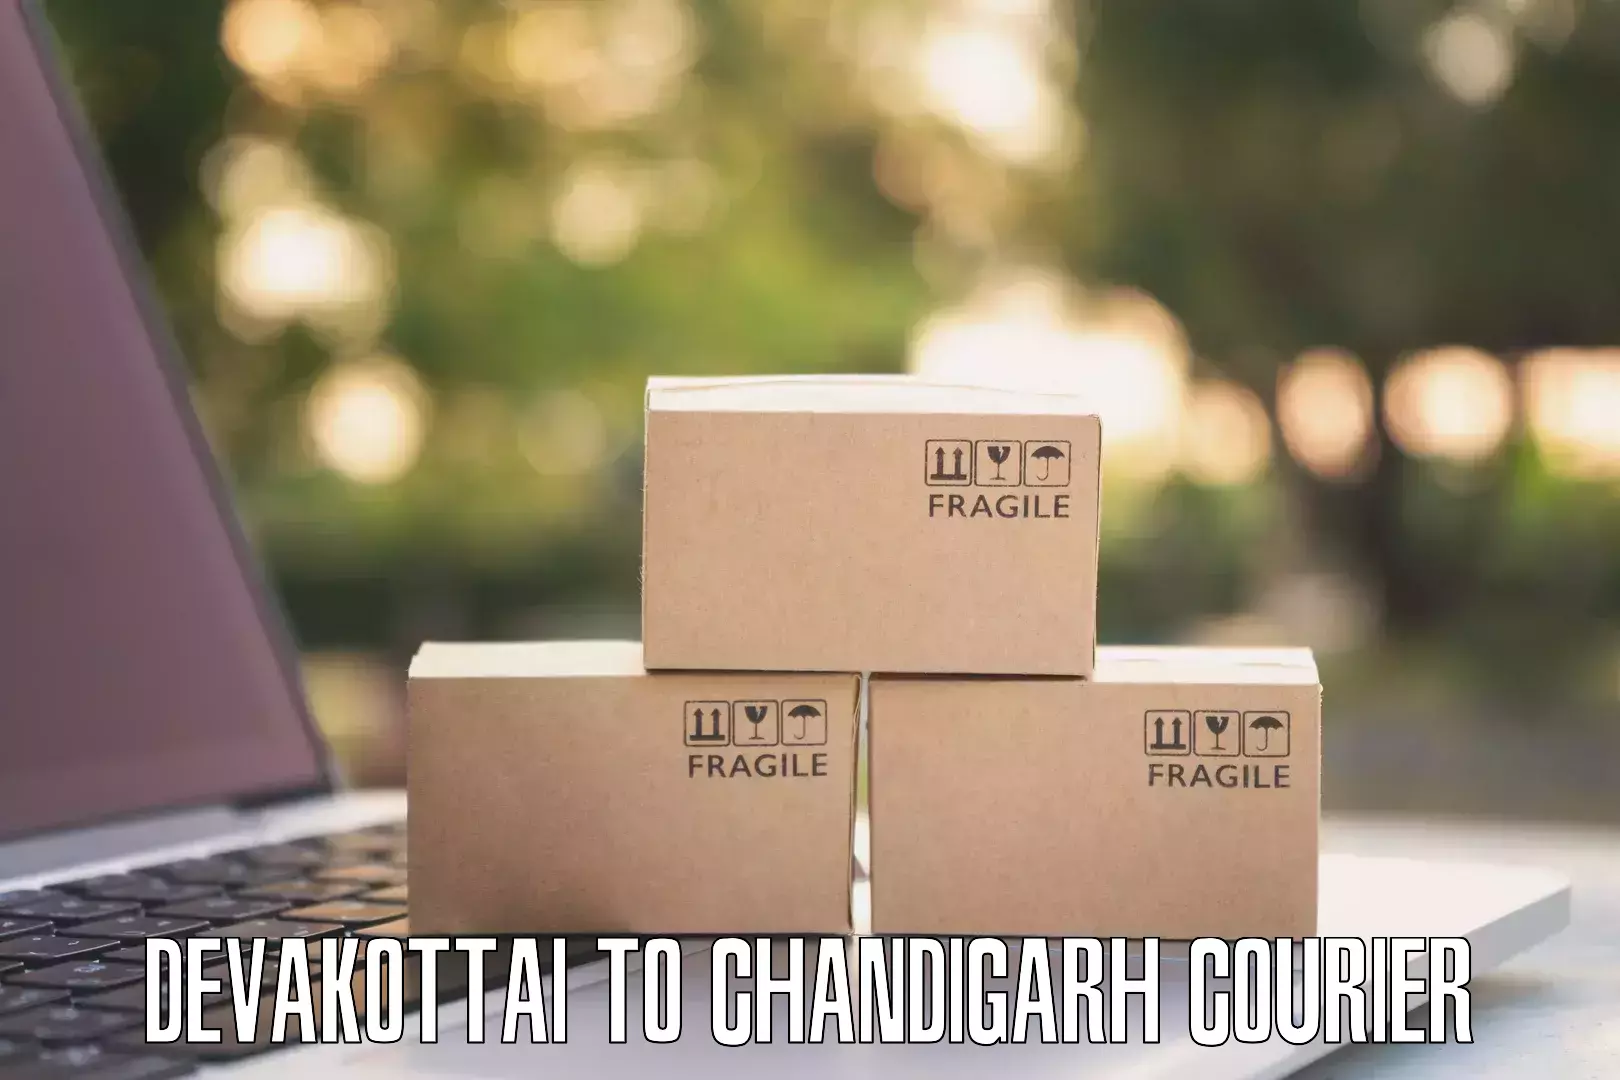 Efficient cargo services Devakottai to Chandigarh